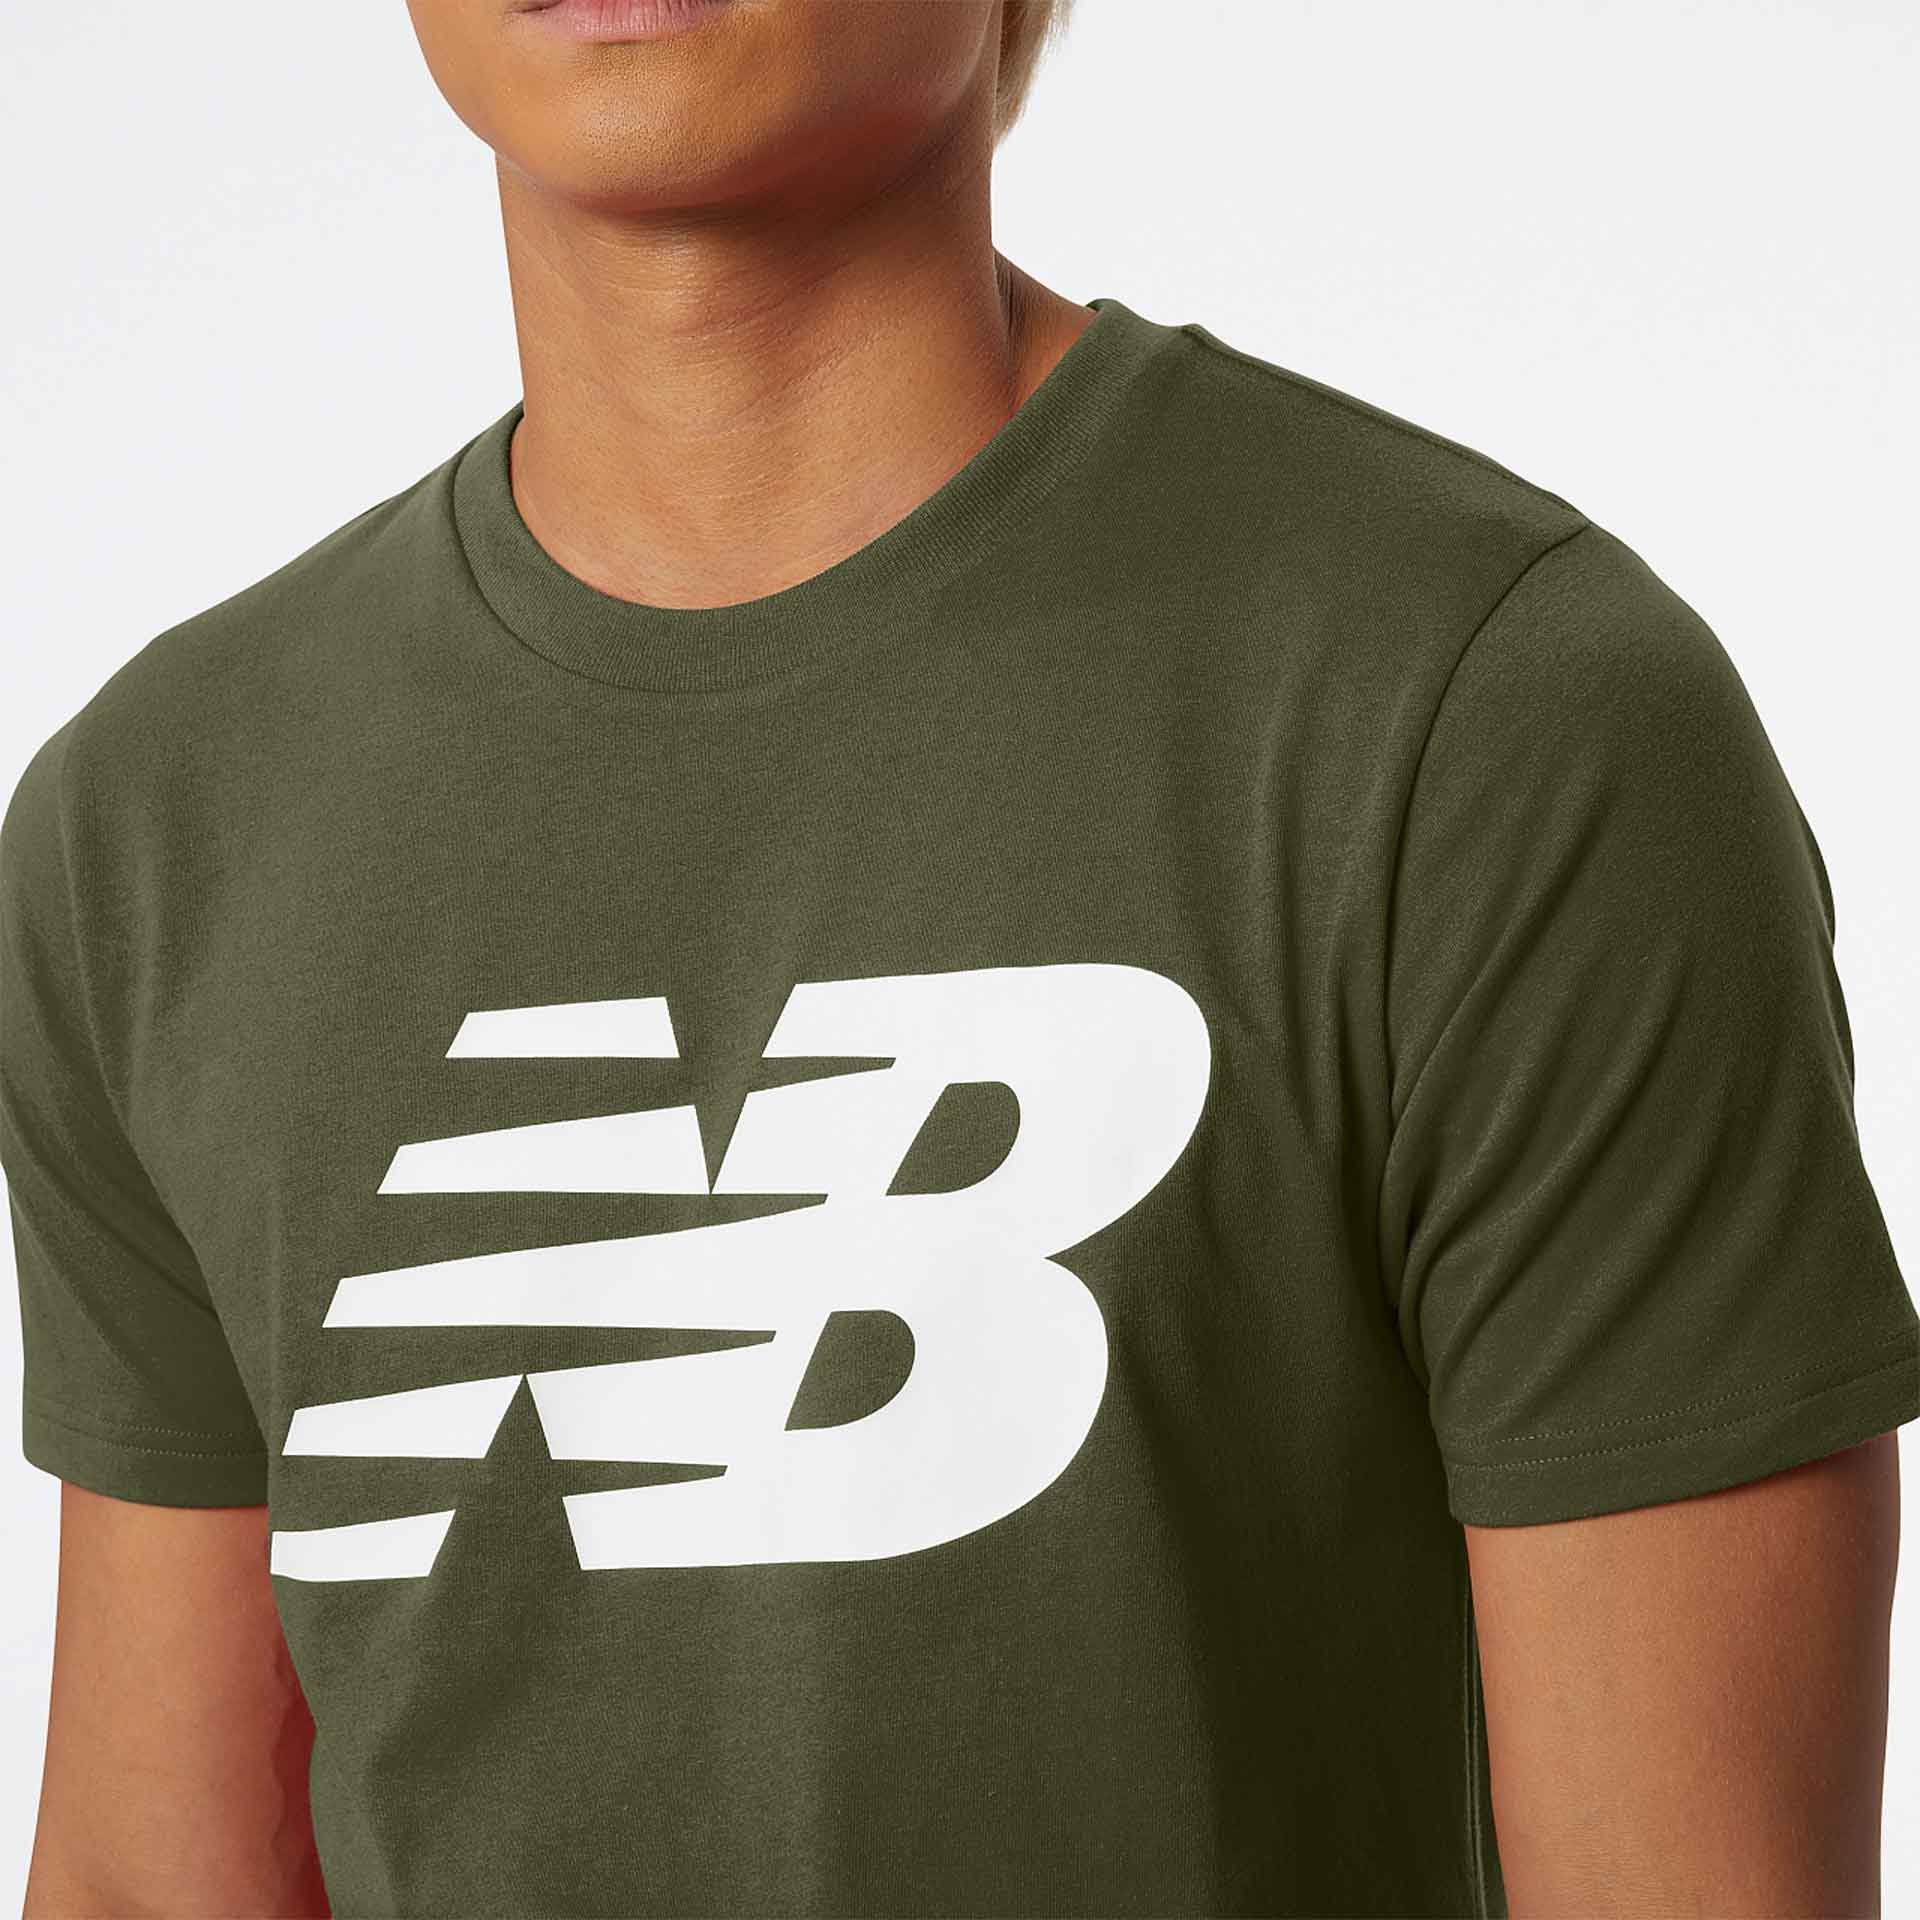 New Balance Classic NB T-Shirt Olive